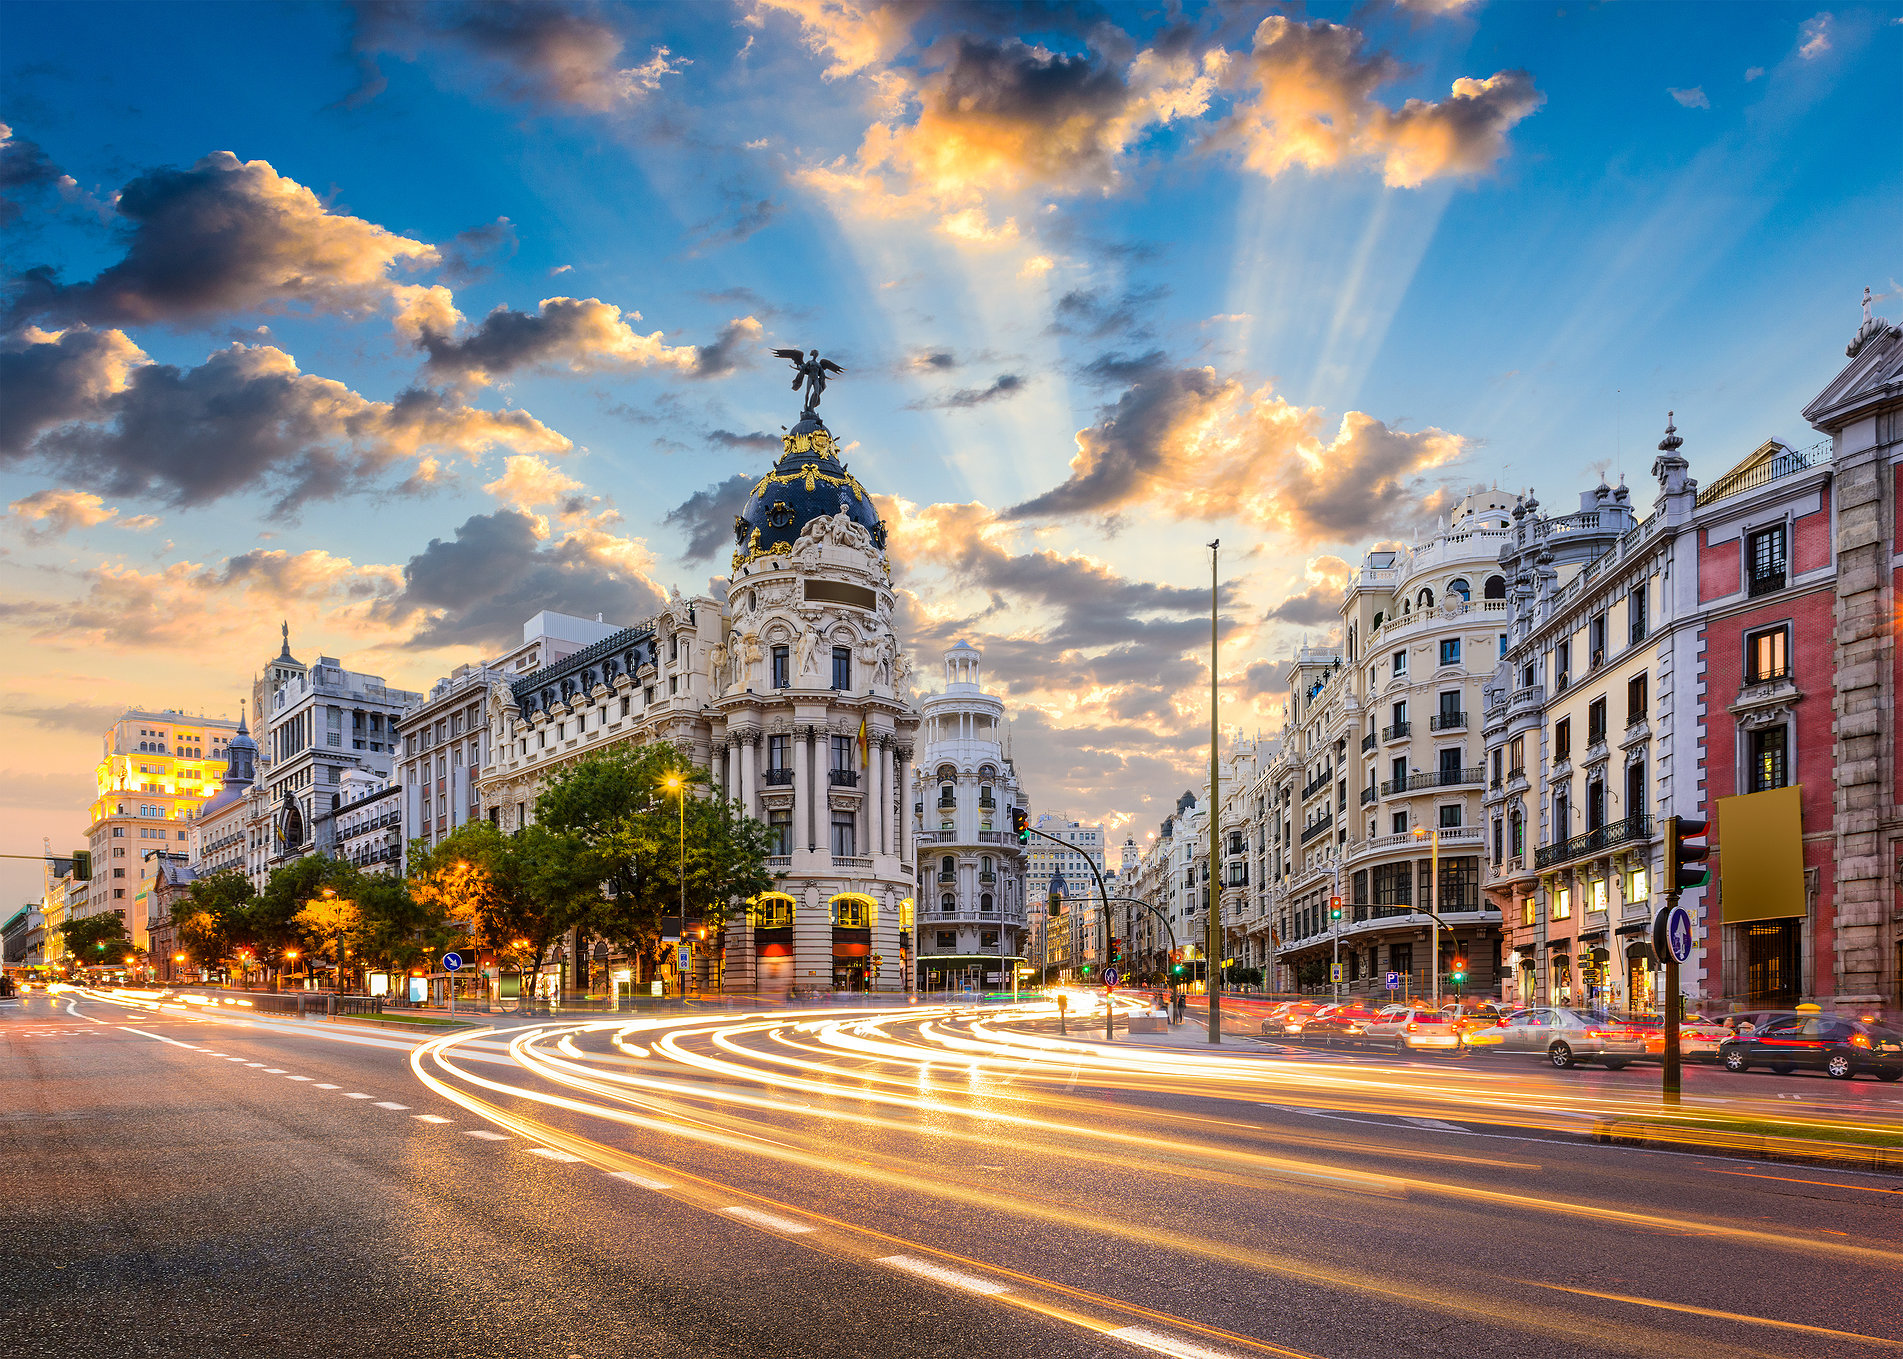 Популярные заставки и фоны Мадрид на компьютер